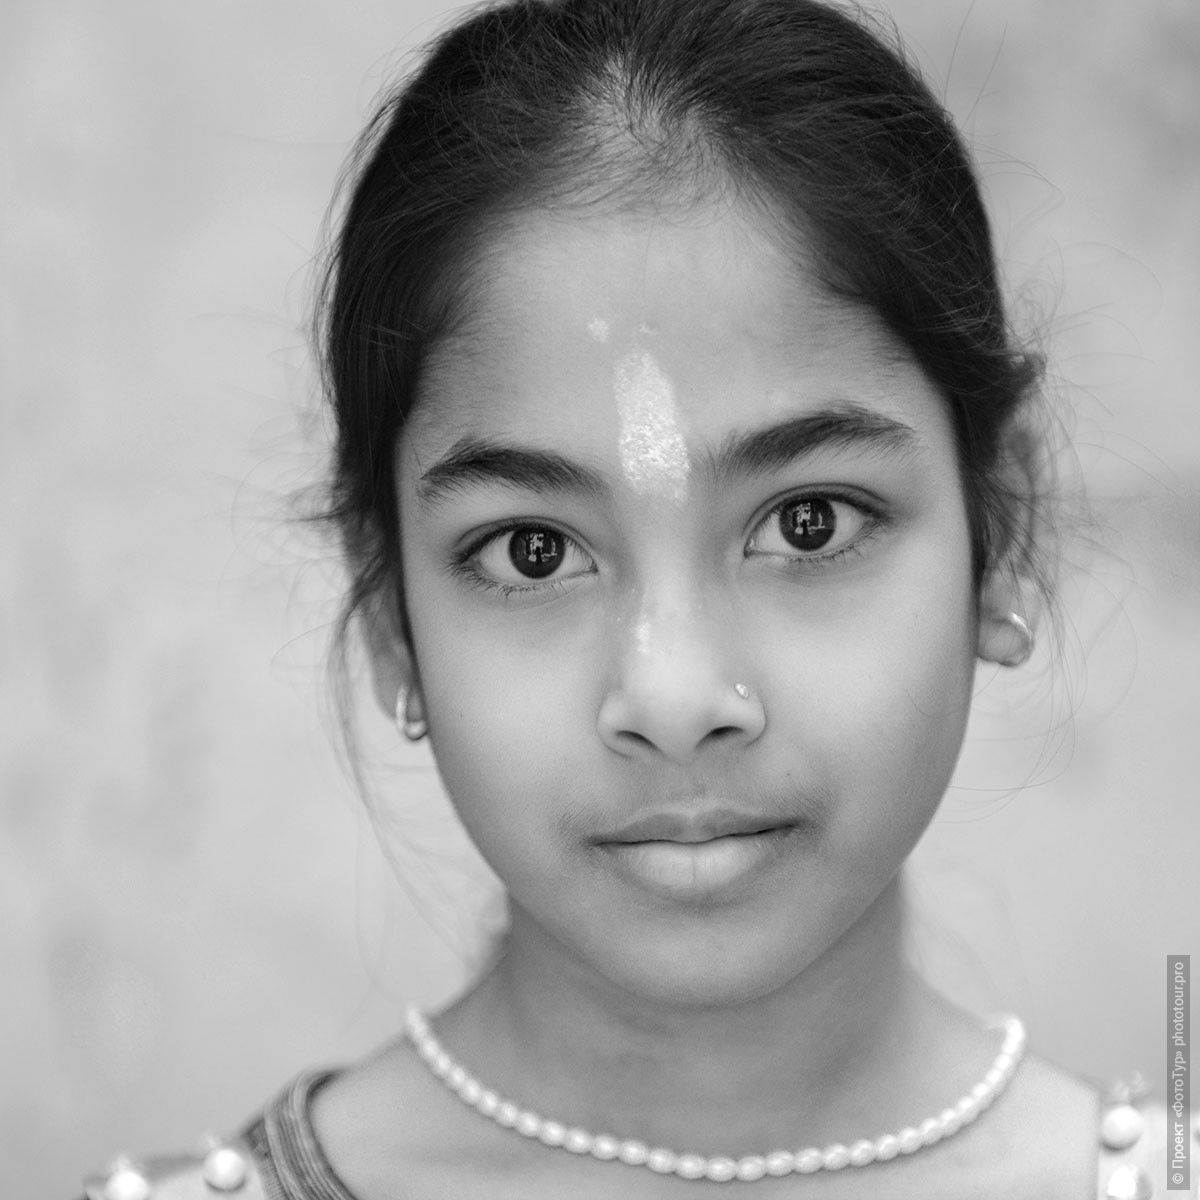 Ангел Индии, Каджурахо. Фотографии людей из Индии. Фототур на праздник Холи в Индию.